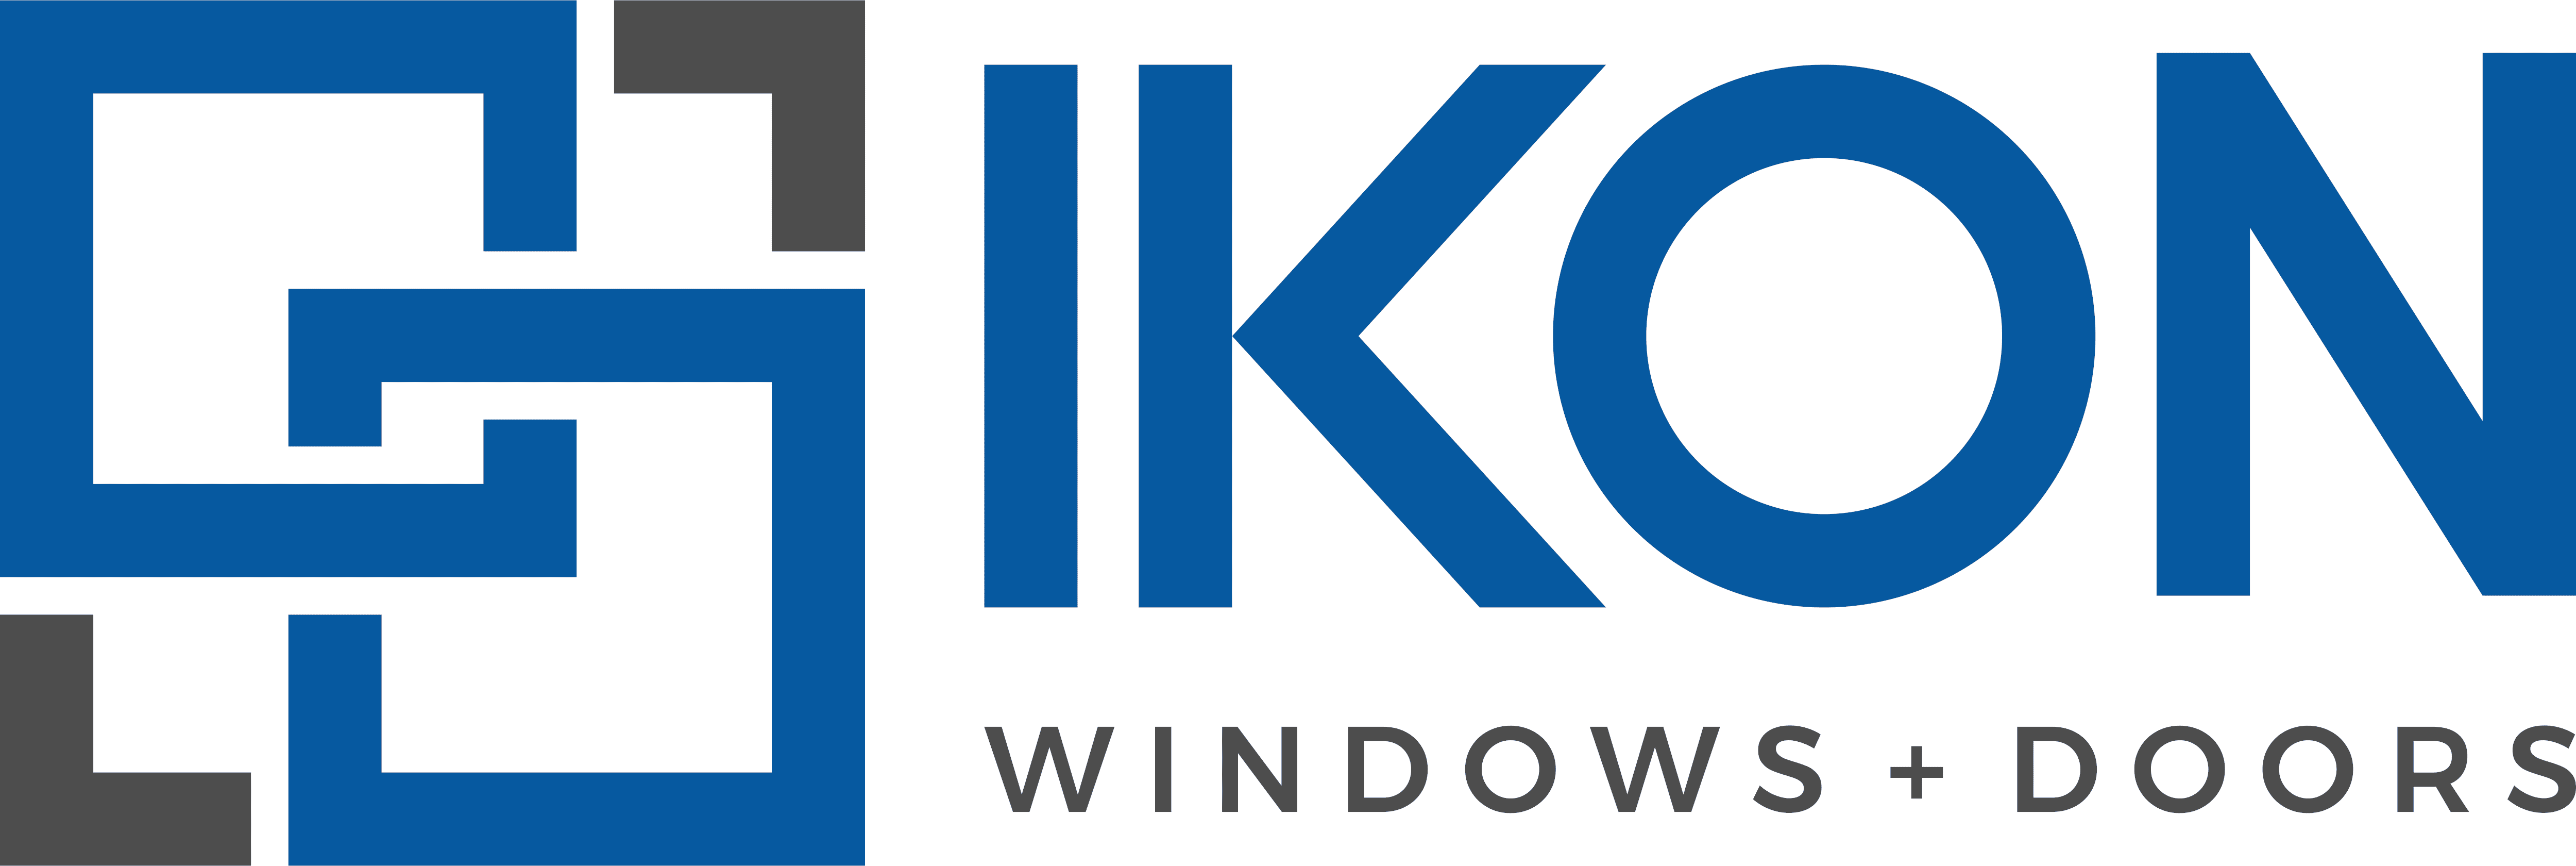 IKON Logo